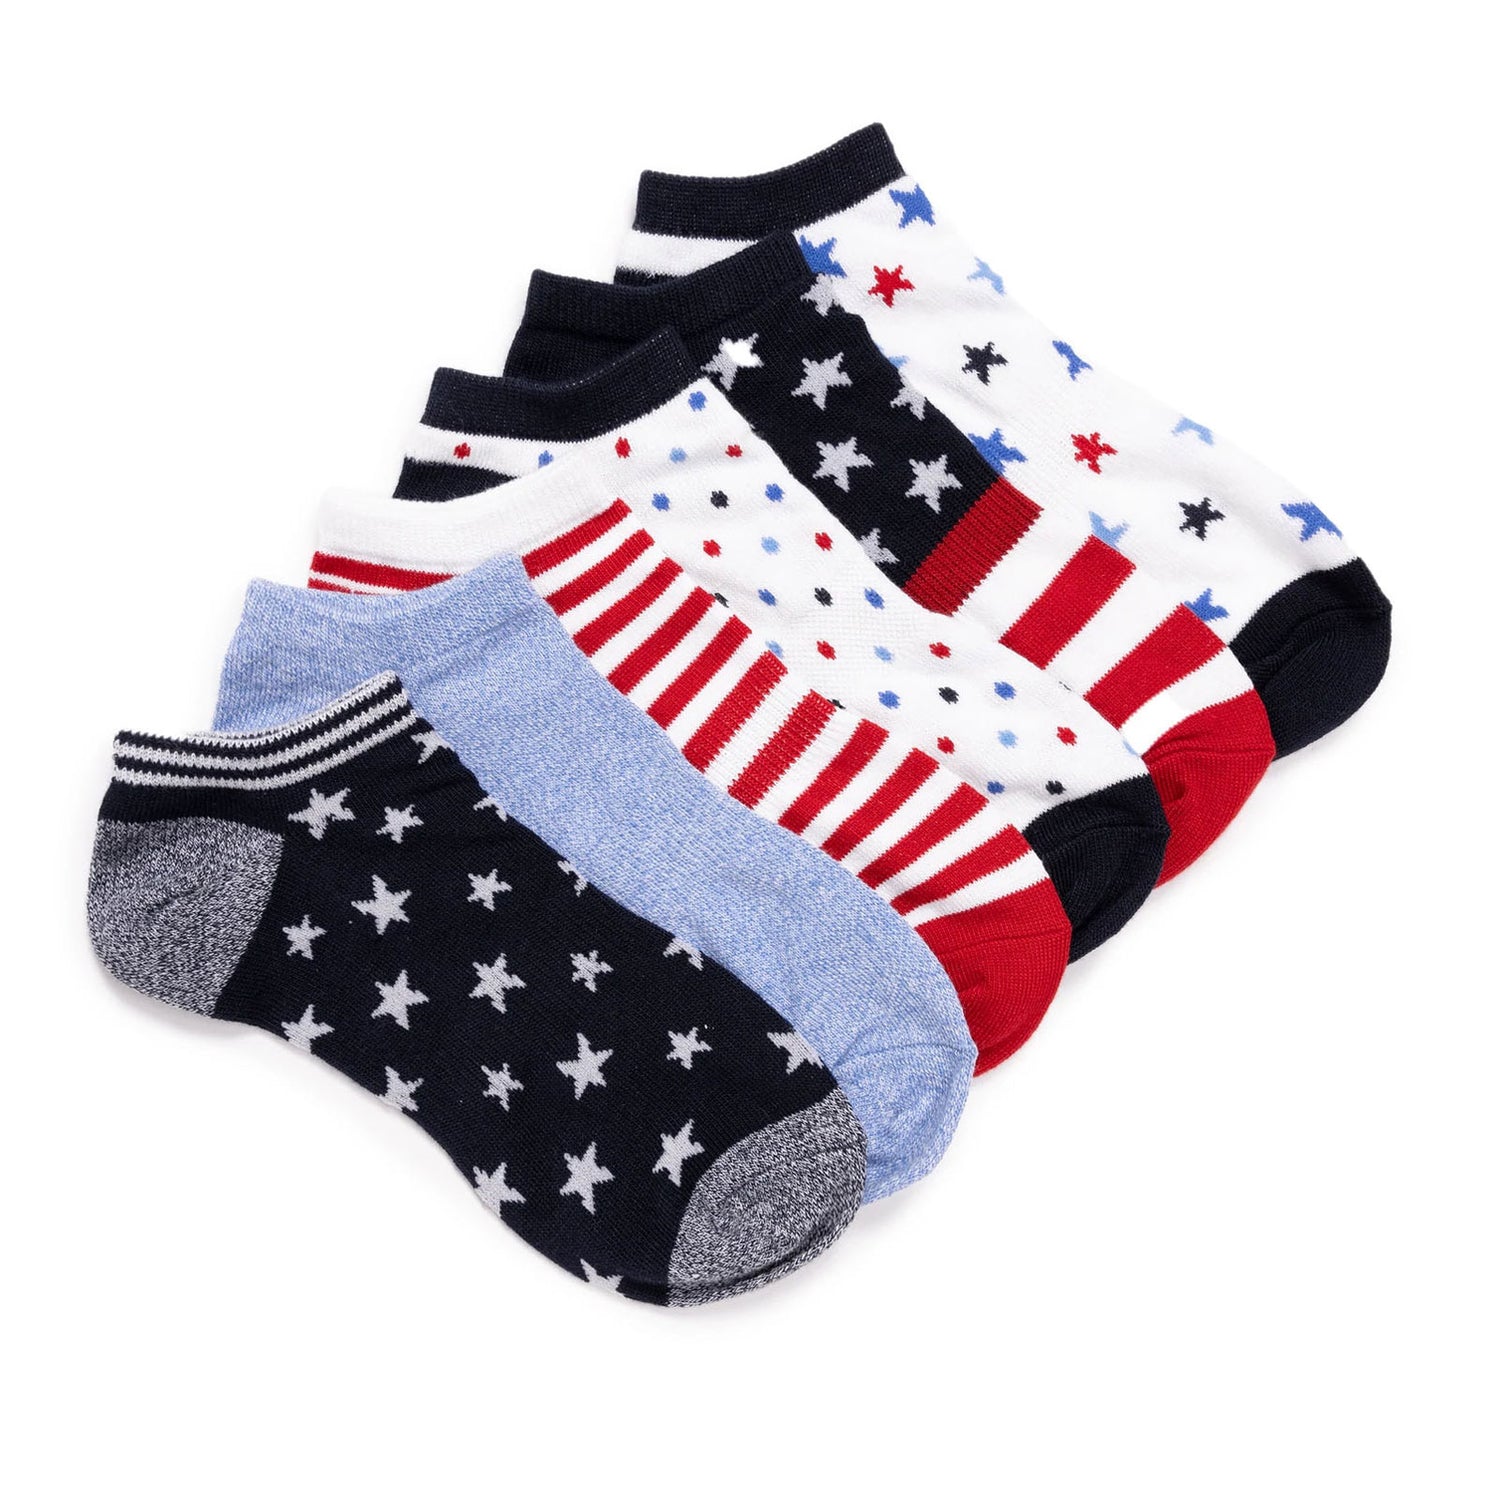 Peltz Shoes  Women's Muk Luks Ankle Socks - 6 Pack AMERICANA 2600011-991